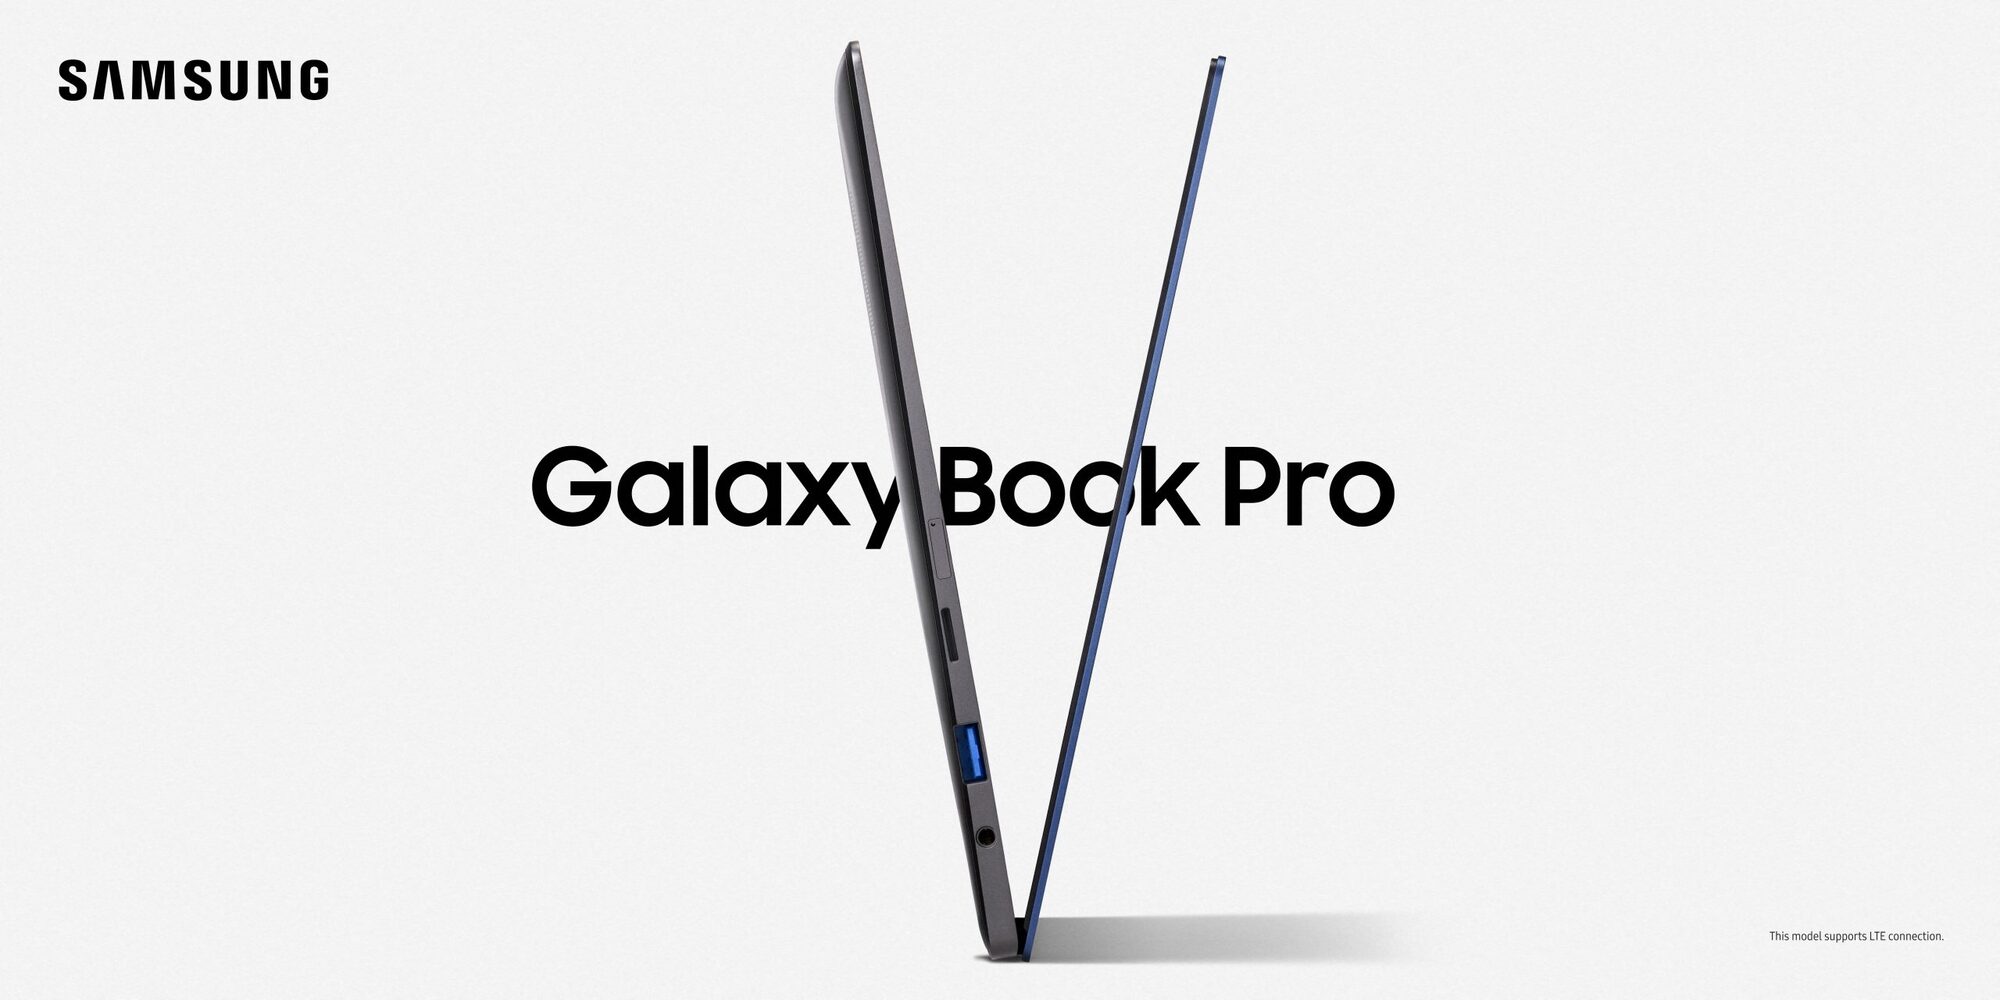 Samsung galaxy book pro Galaxy_Book_Pro_13inch_MysticBlue_LTE_3_210416092724-Copy-scaled.jpg